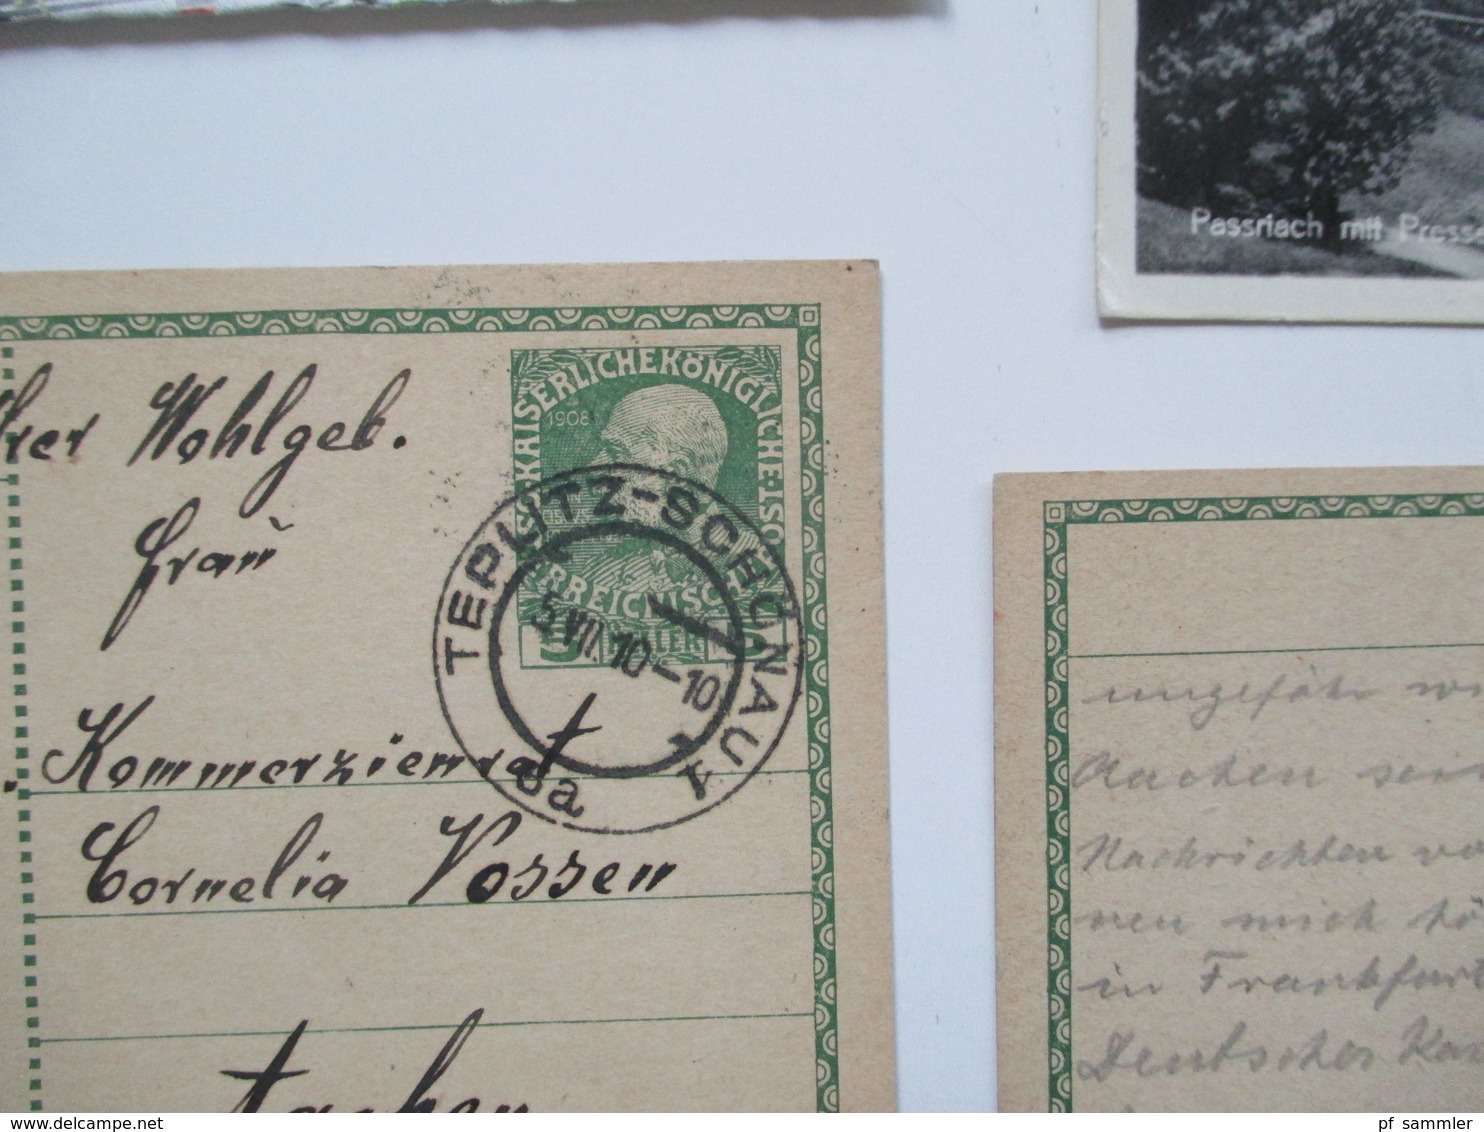 Österreich ab 1877 bis 1970er Jahre Belege / Postkarten / GA. Stöberposten. Viel 1950/60er Jahre! FDC / Bedarf.